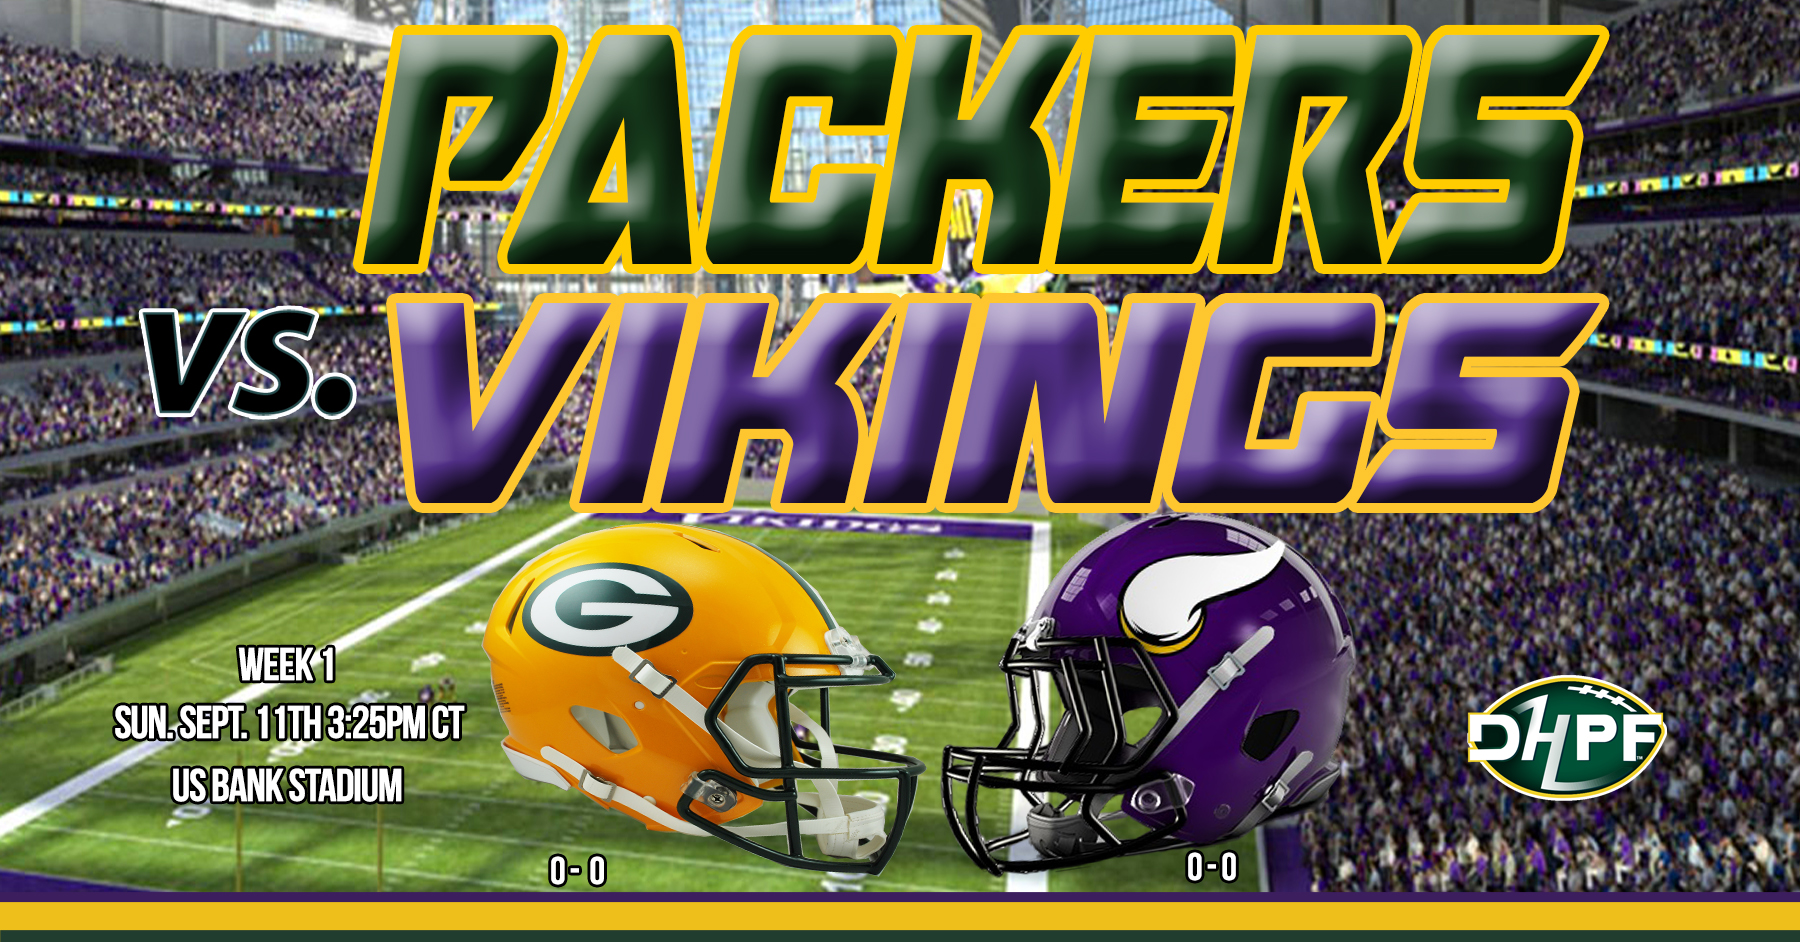 Pack look to get on track in Week 1 at Minnesota - Die Hard Packer Fan